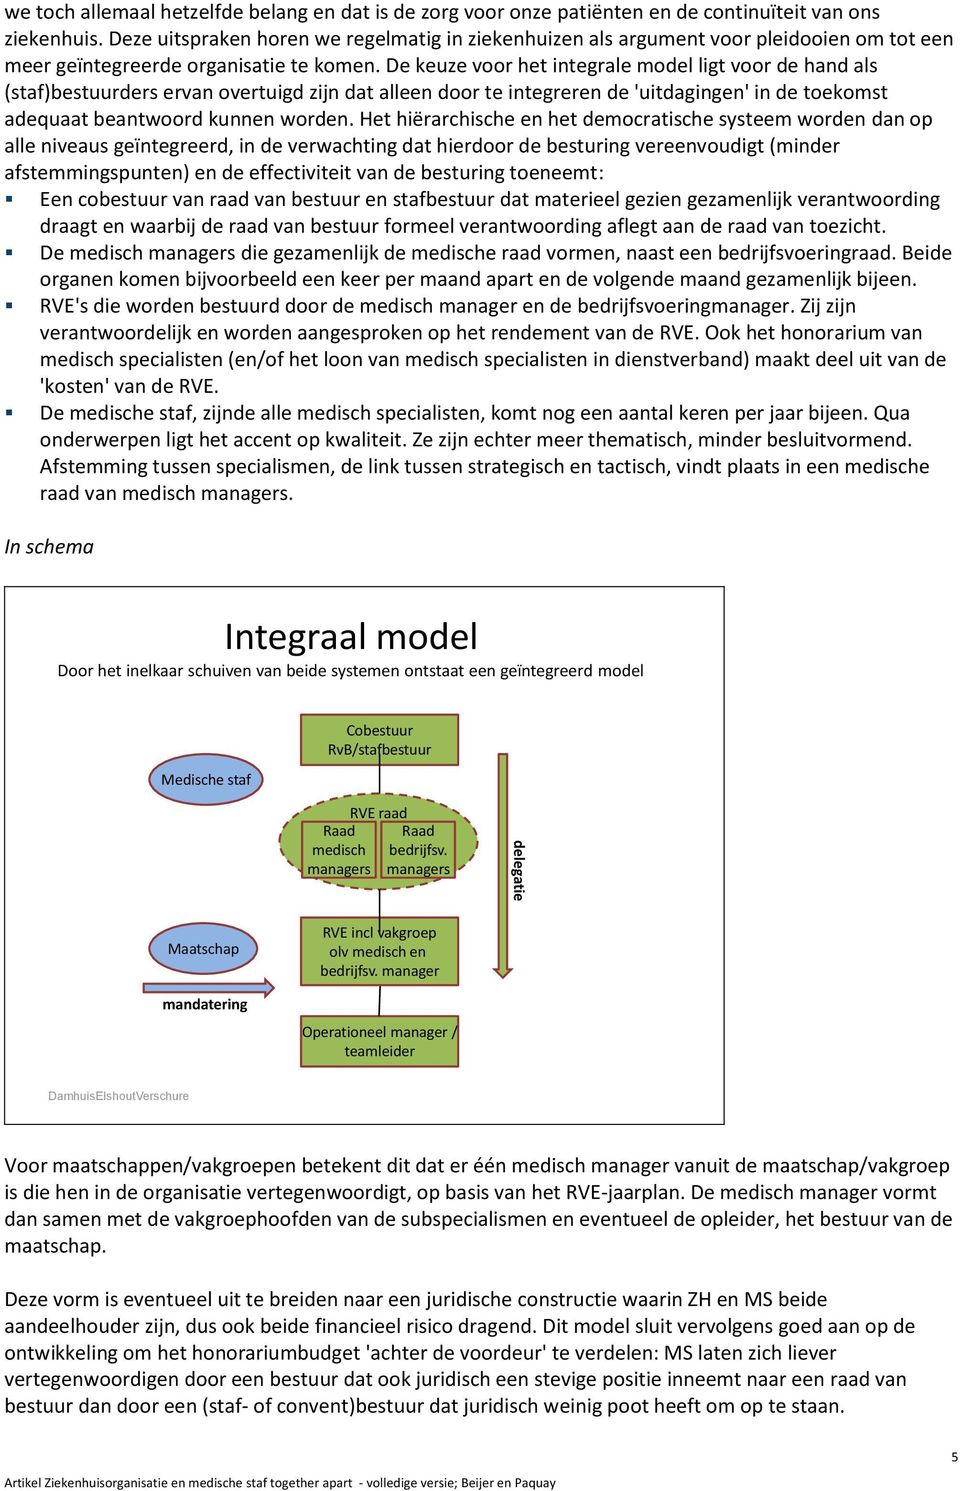 De keuze voor het integrale model ligt voor de hand als (staf)bestuurders ervan overtuigd zijn dat alleen door te integreren de 'uitdagingen' in de toekomst adequaat beantwoord kunnen worden.